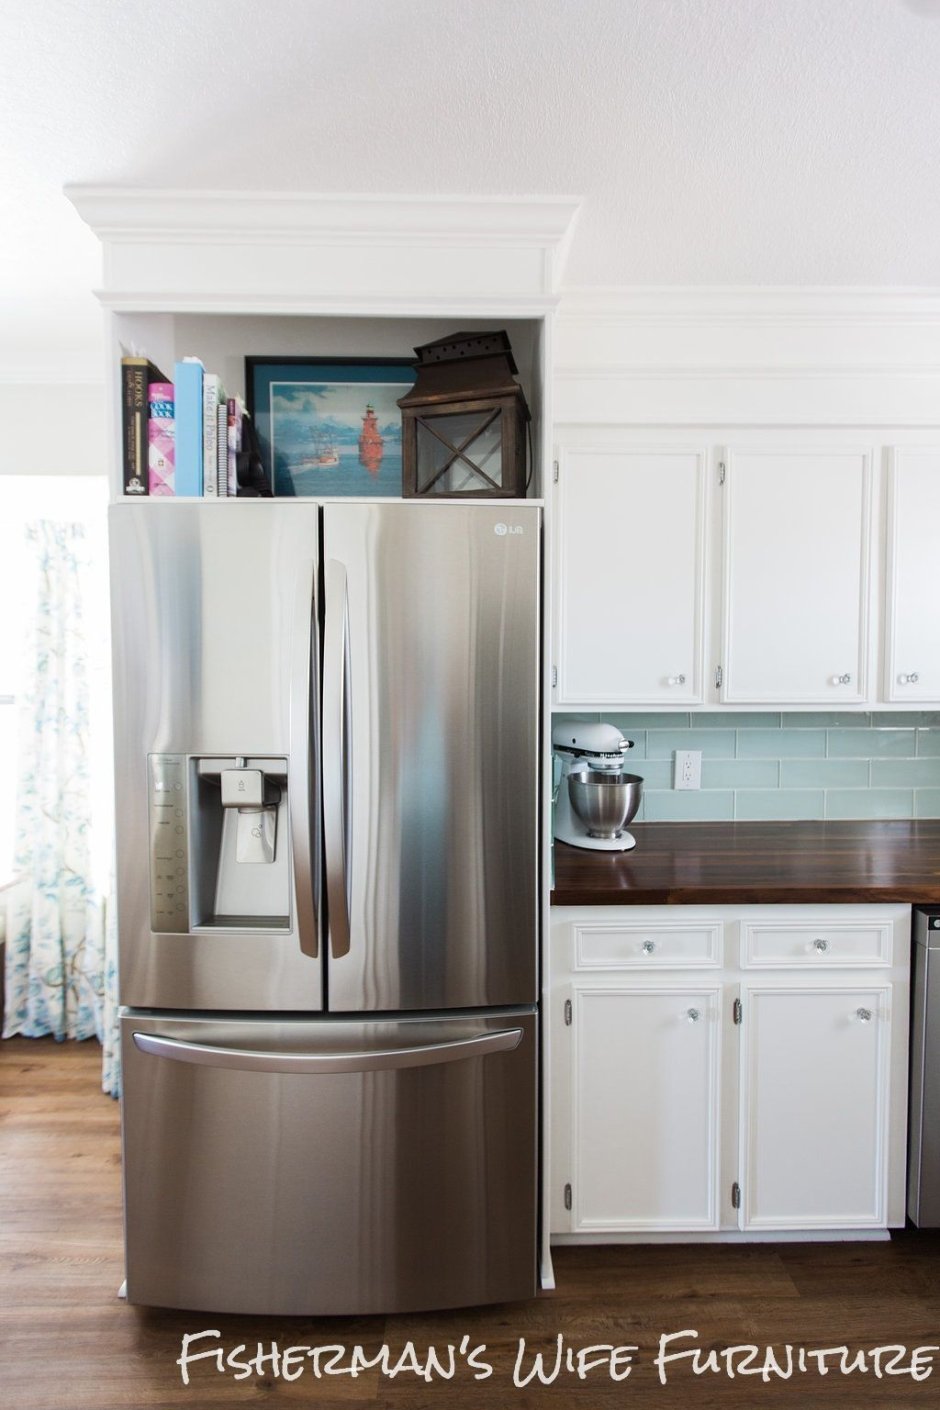 Шкаф над холодильником в кухне